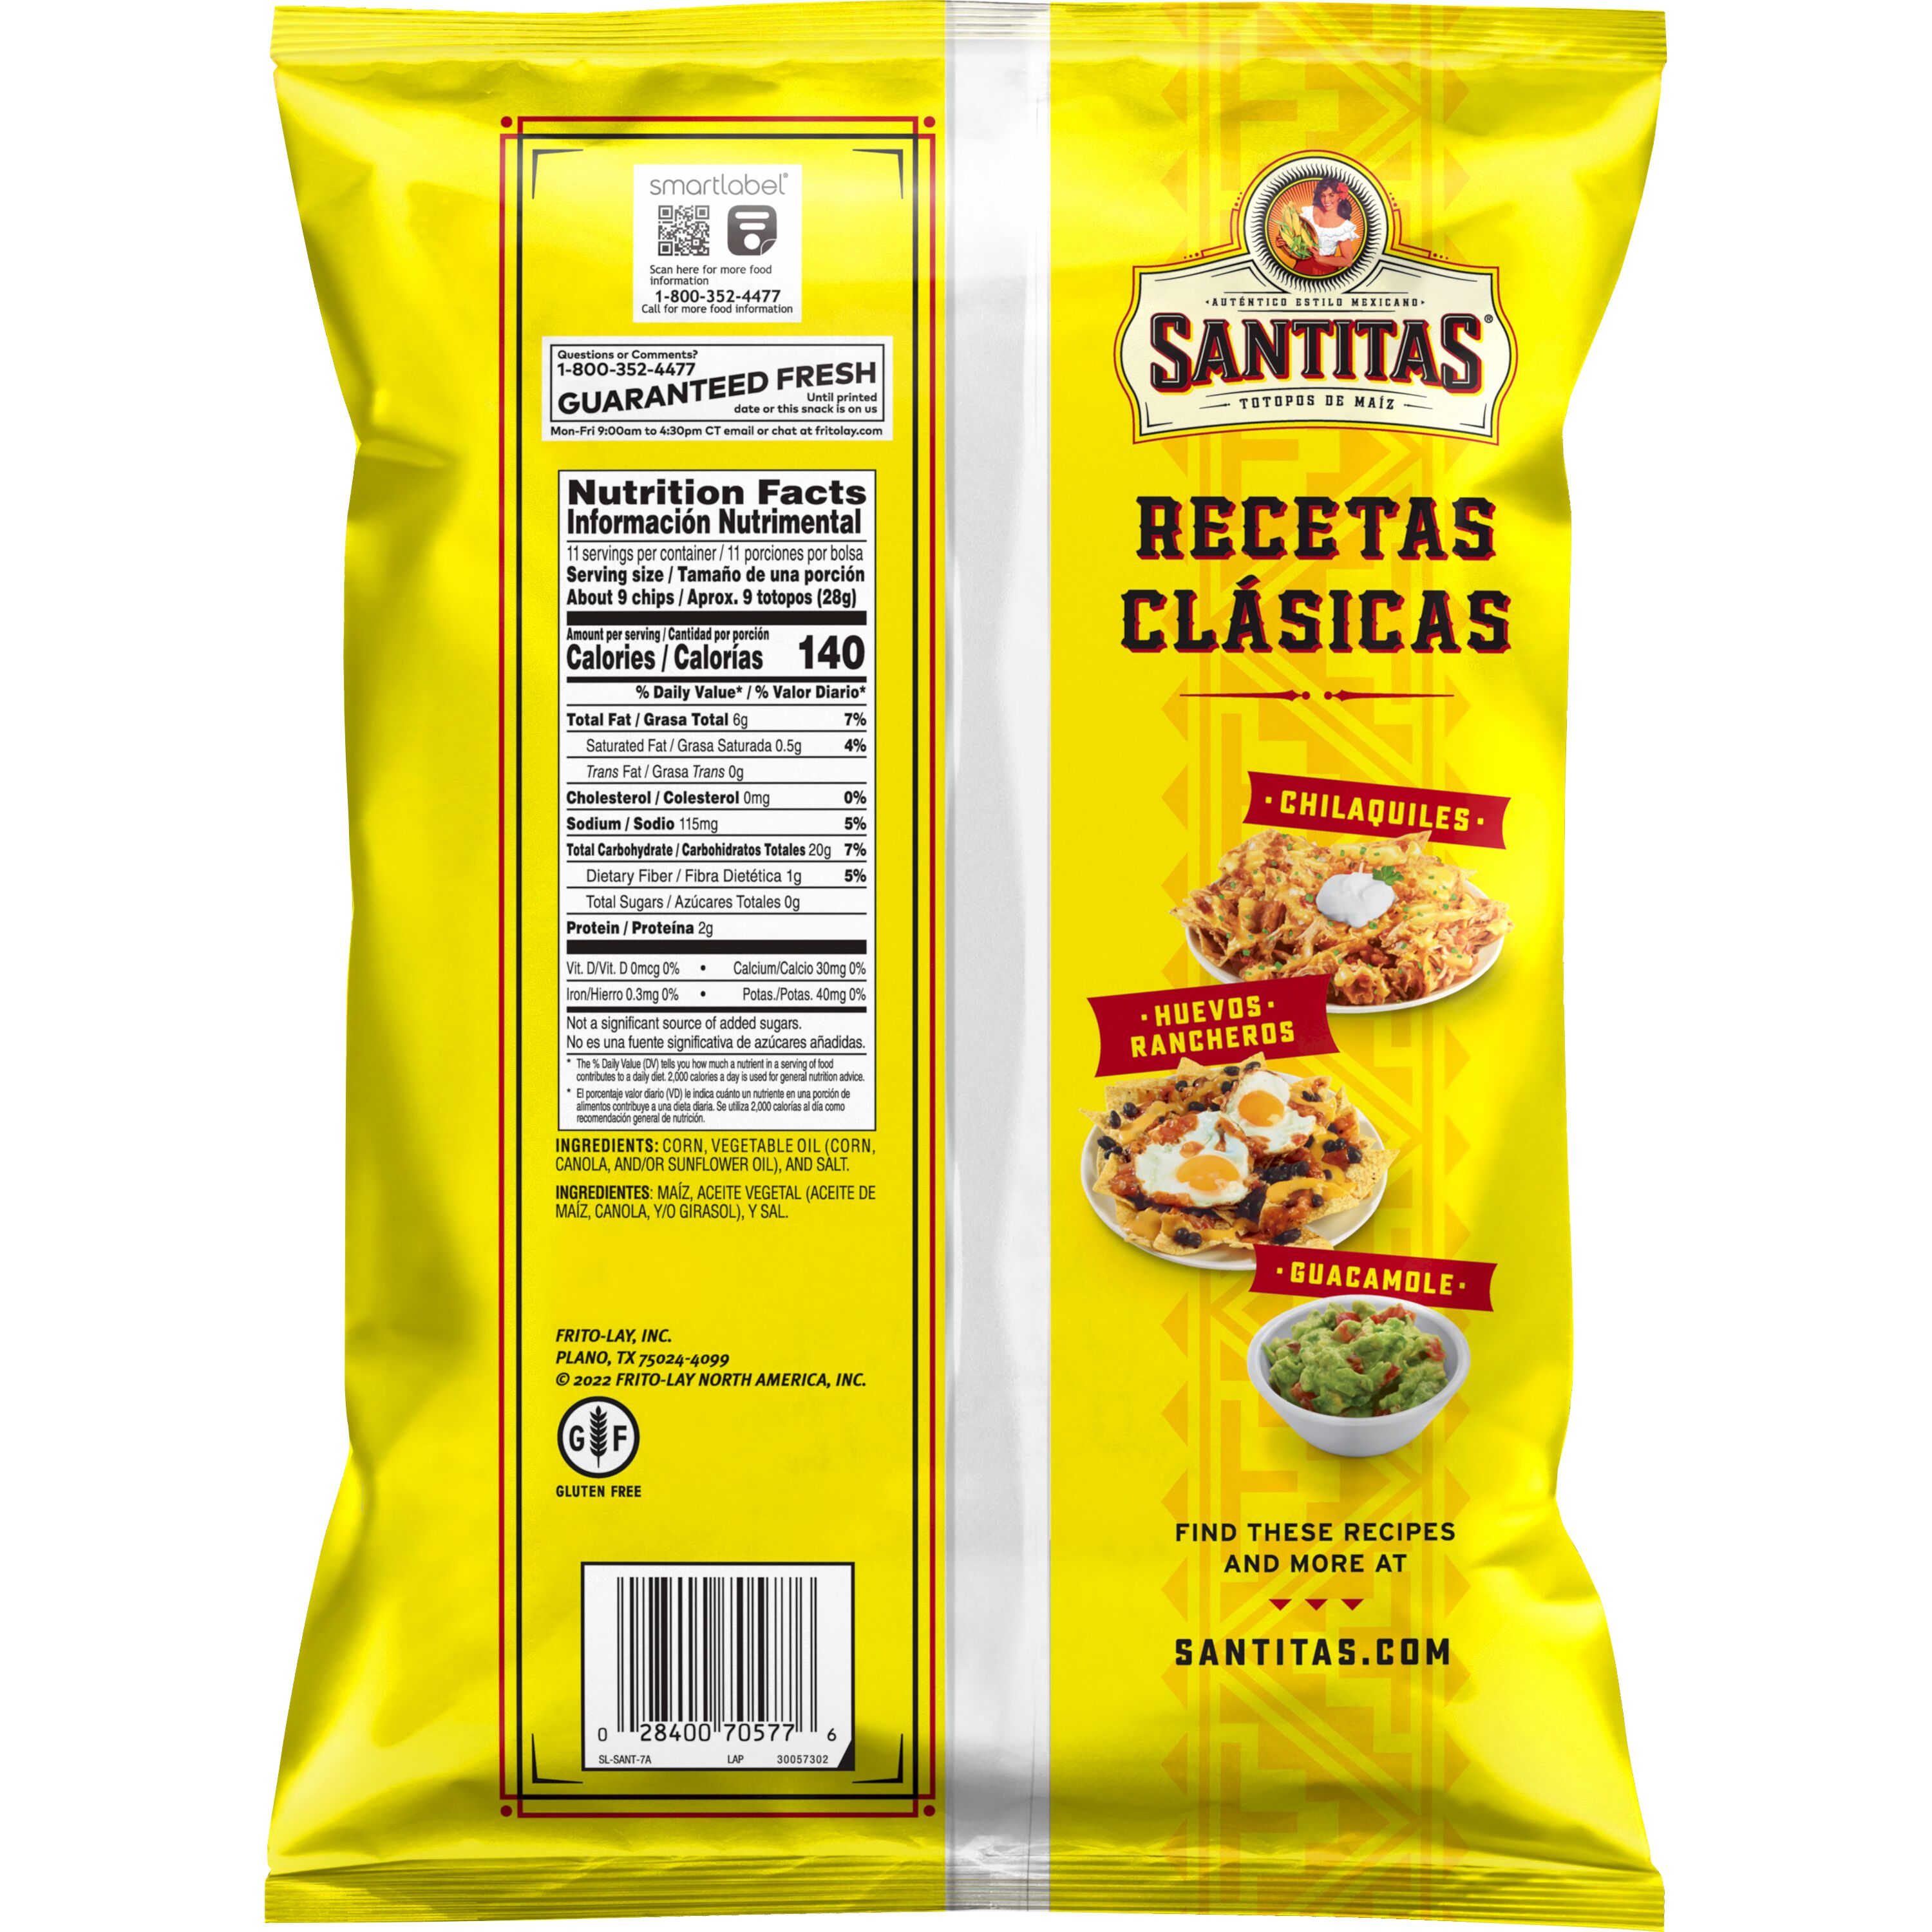 Santitas Tortilla Chips Blended Corn, 11 oz - image 2 of 5